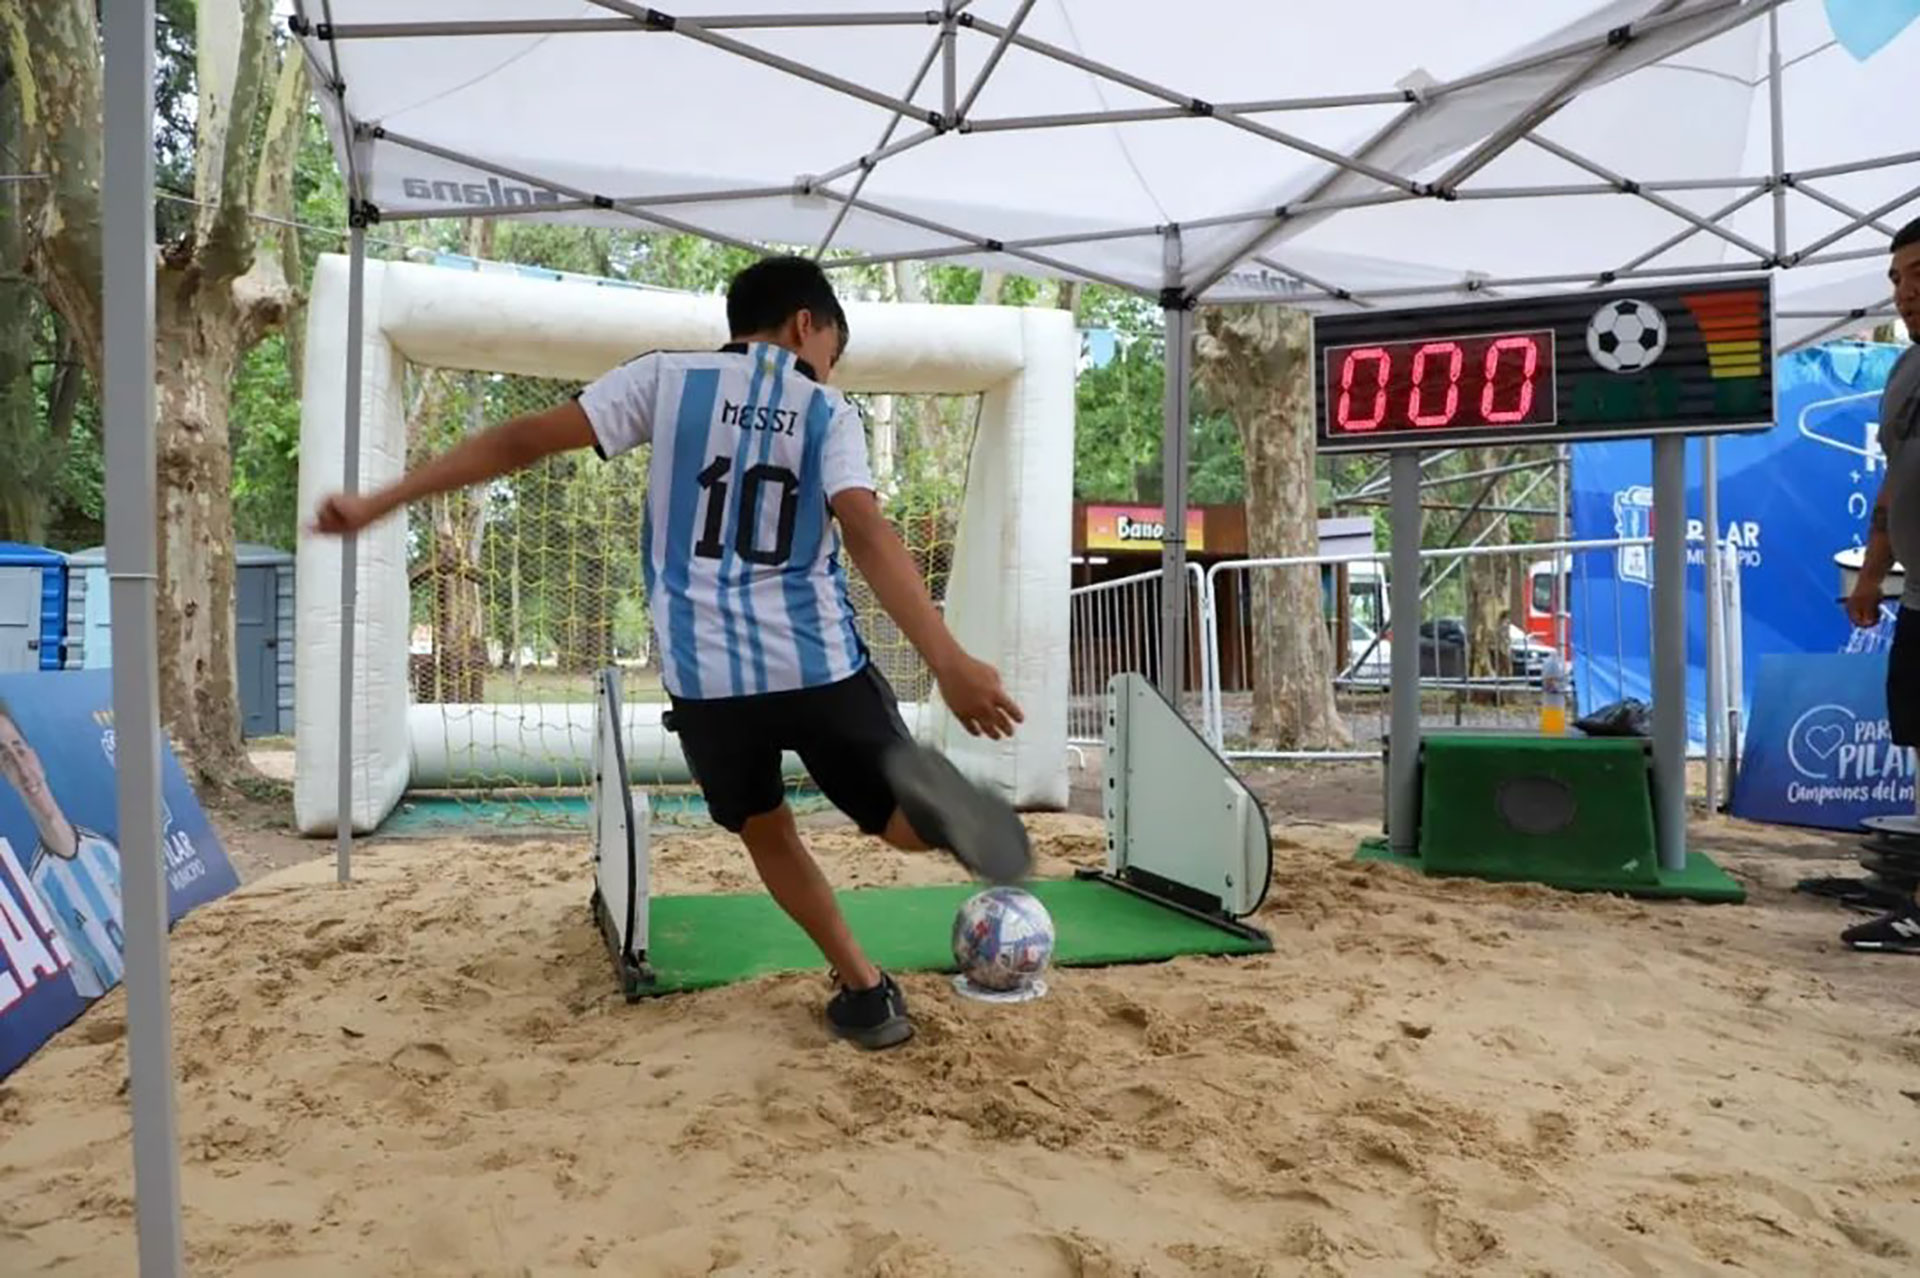 El chutómetro es de los juegos más populares del parque temático "Campeones del Mundo" (Crédito: Instagram @municipiopilar)